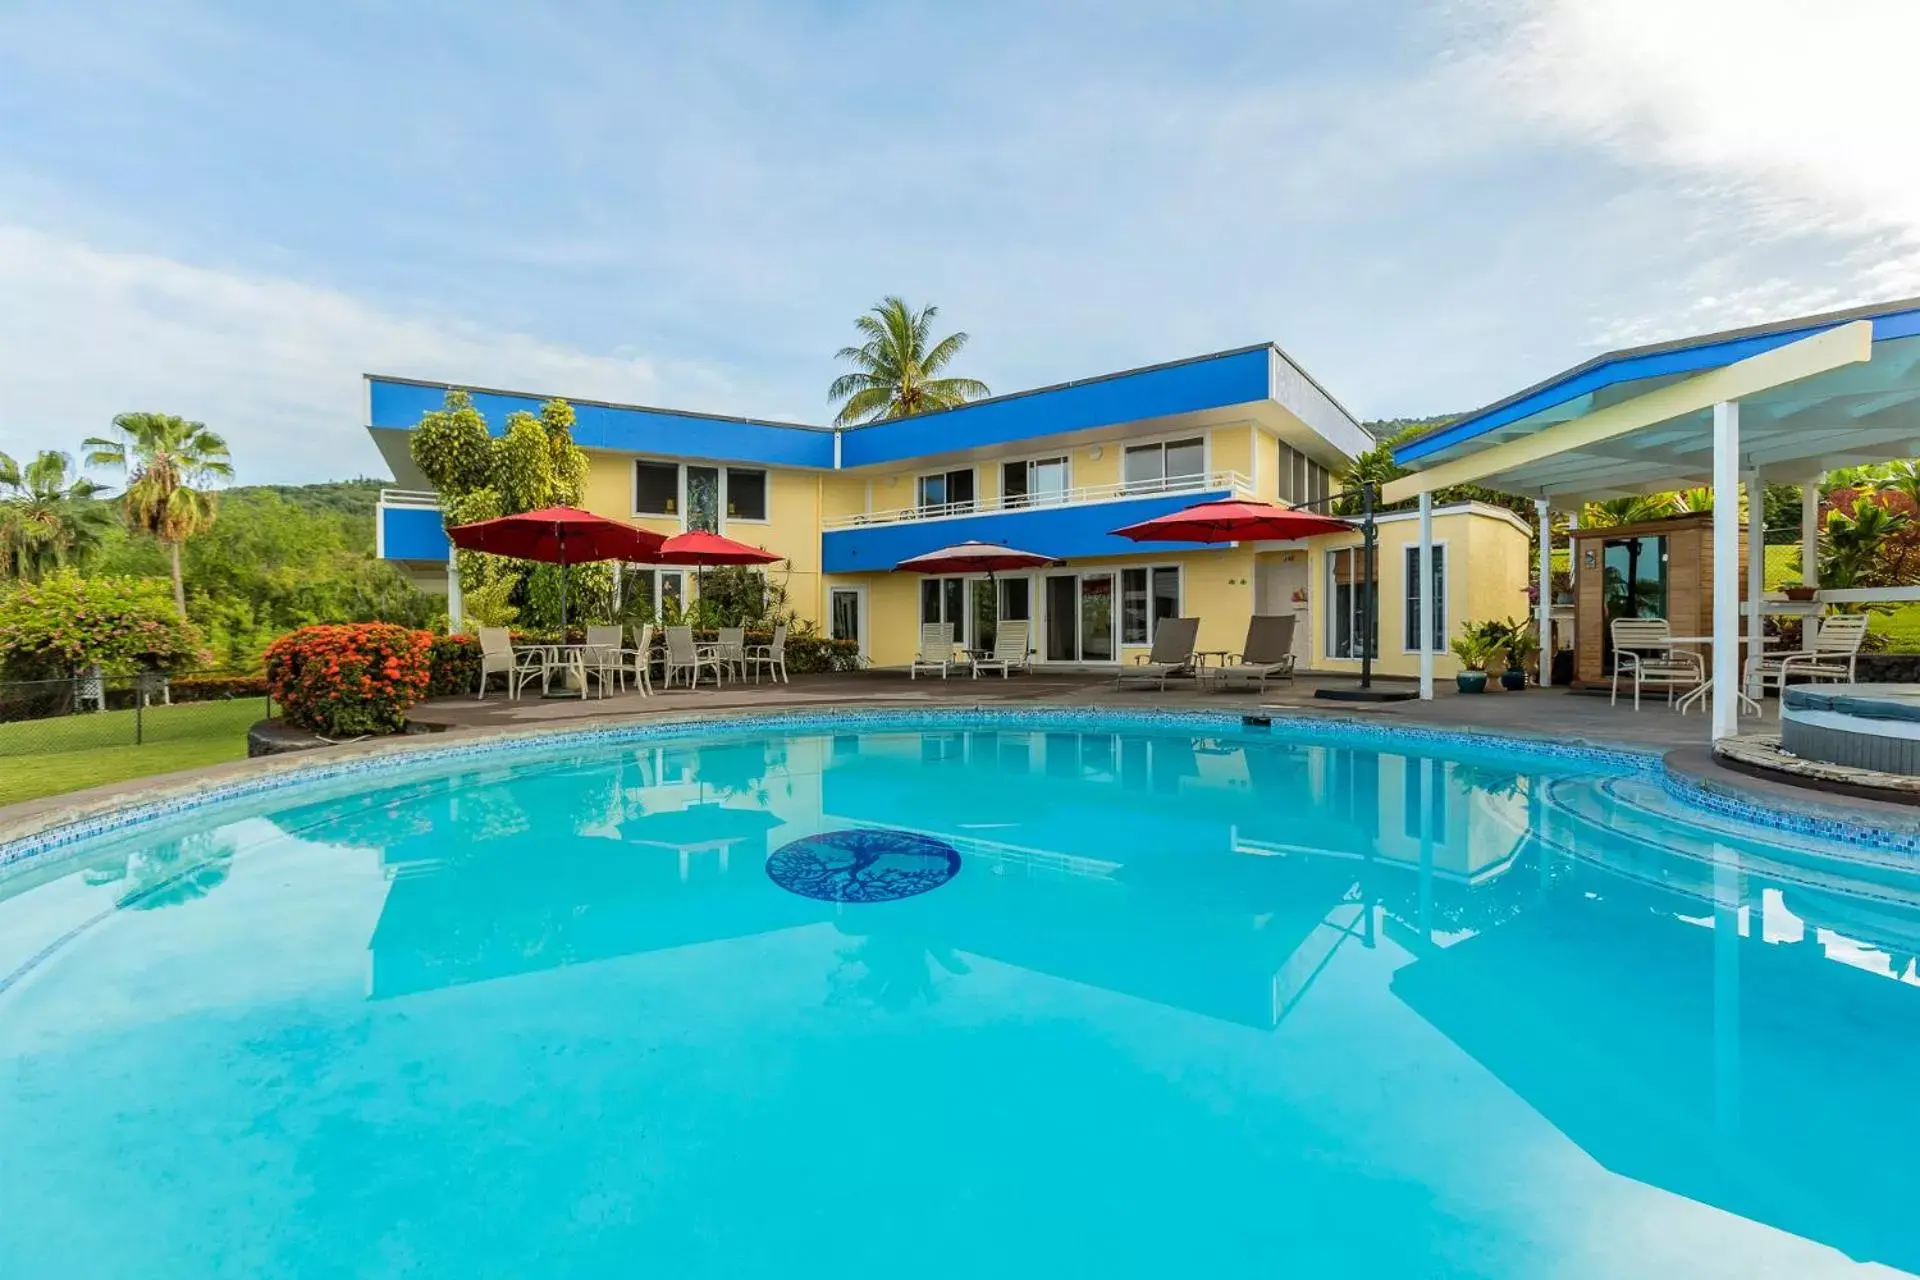 Swimming pool in Luana Inn